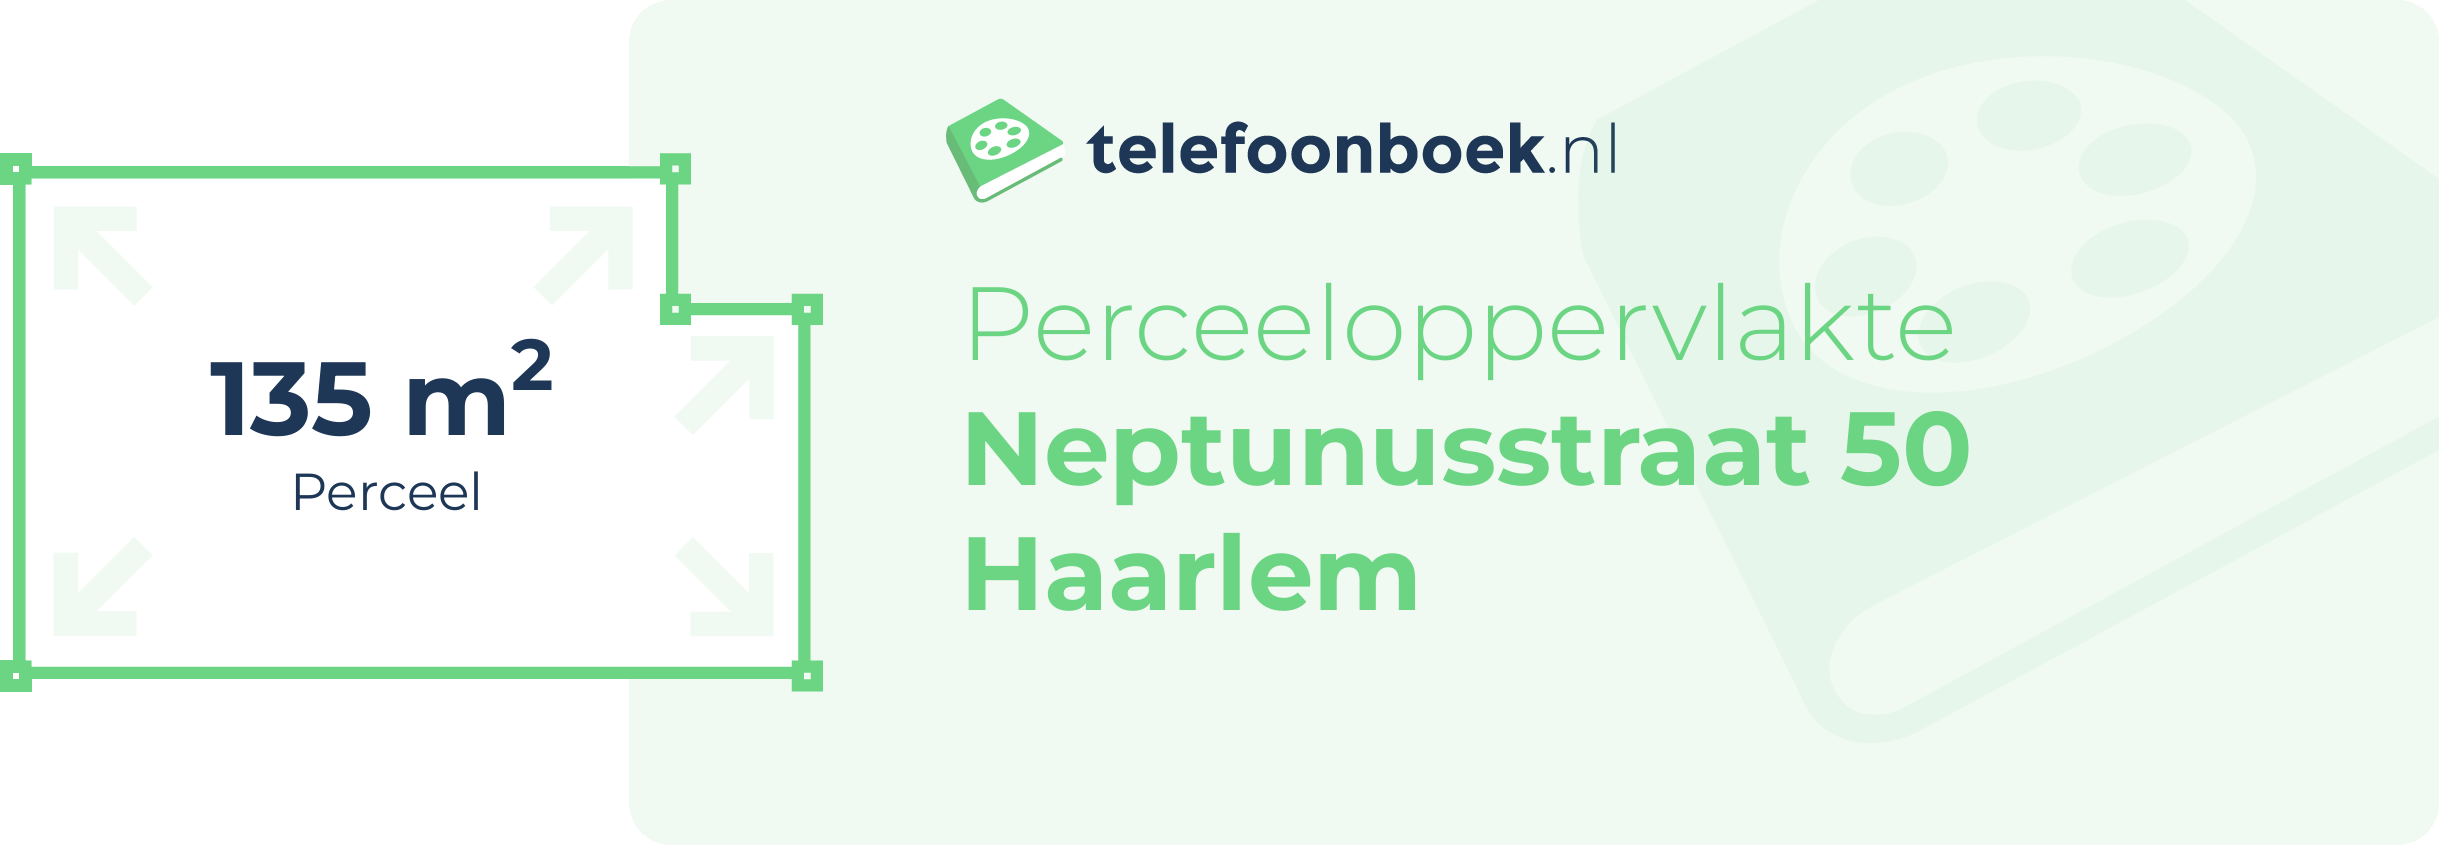 Perceeloppervlakte Neptunusstraat 50 Haarlem